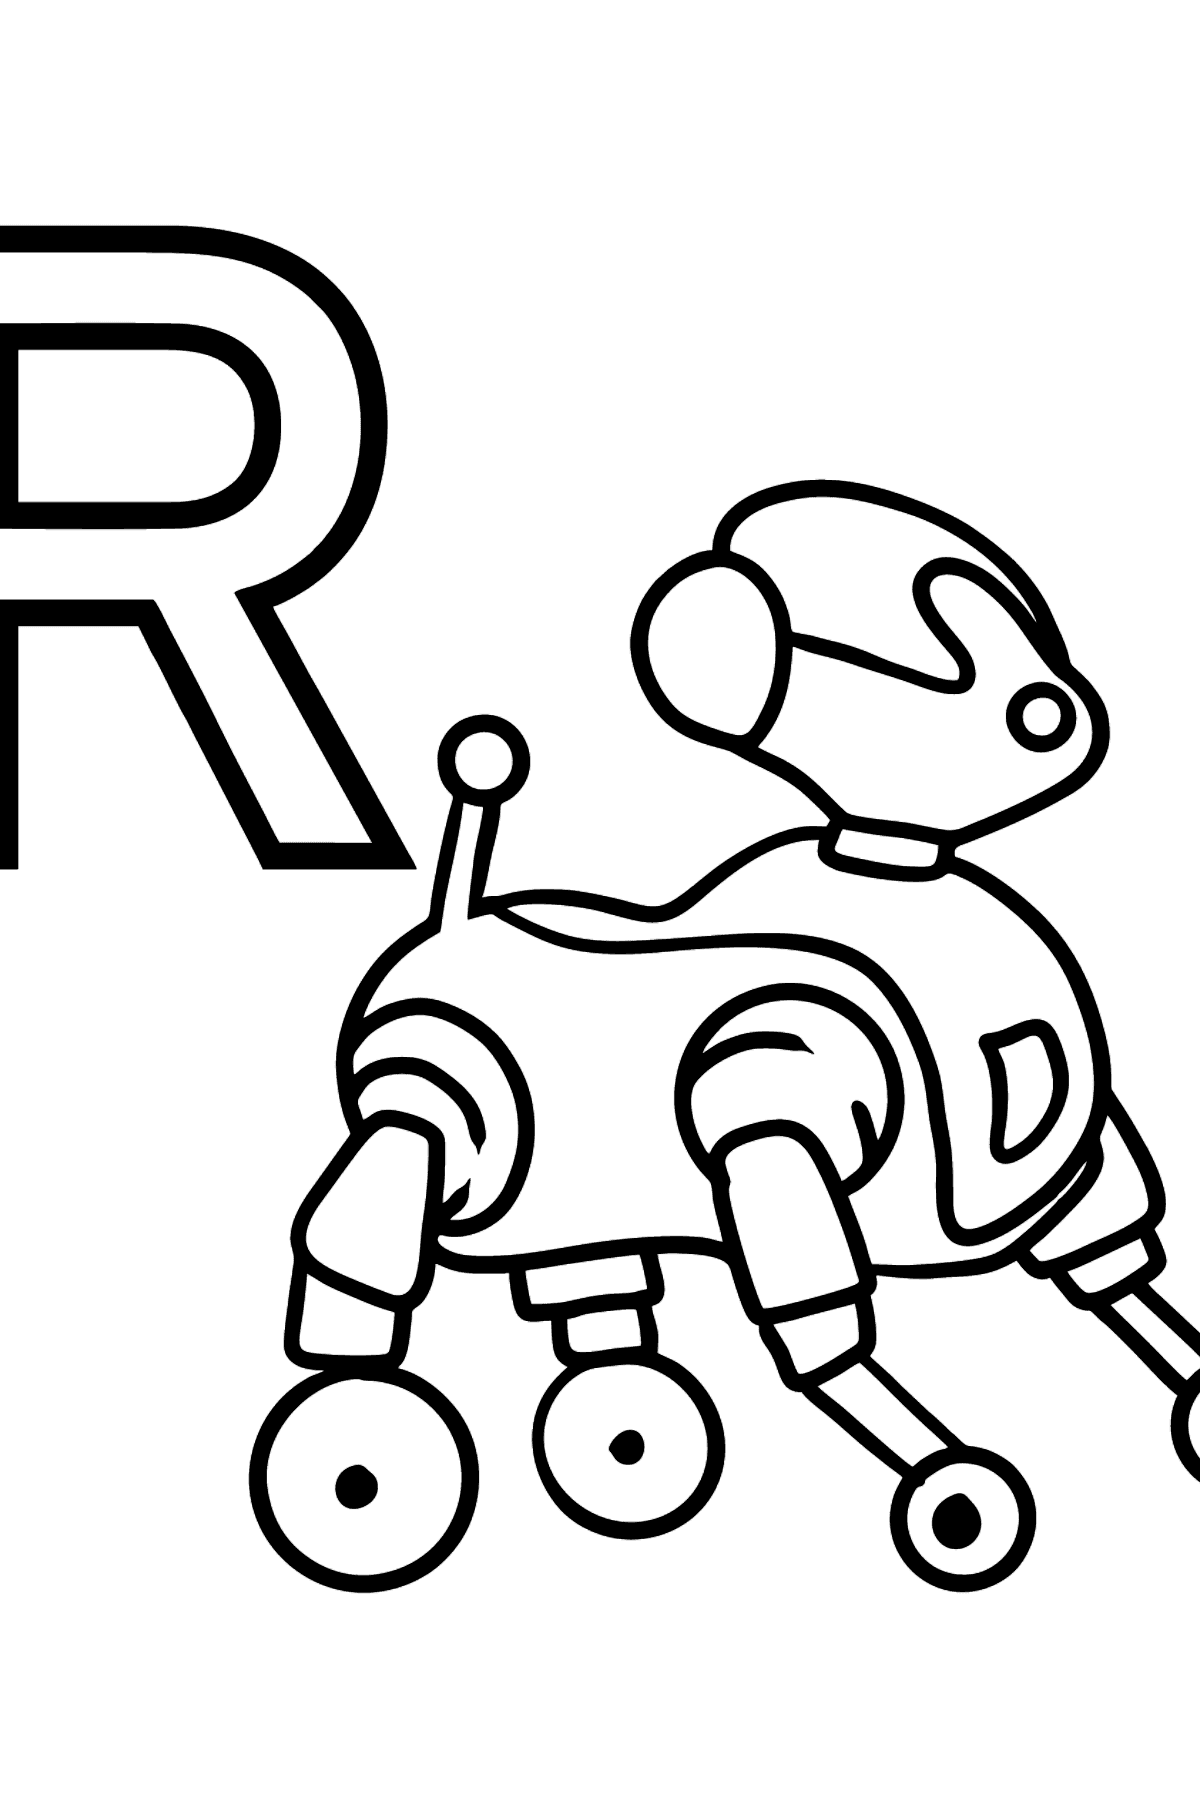 Desenho de Letra Espanhol R para colorir - ROBOT - Imagens para Colorir para Crianças